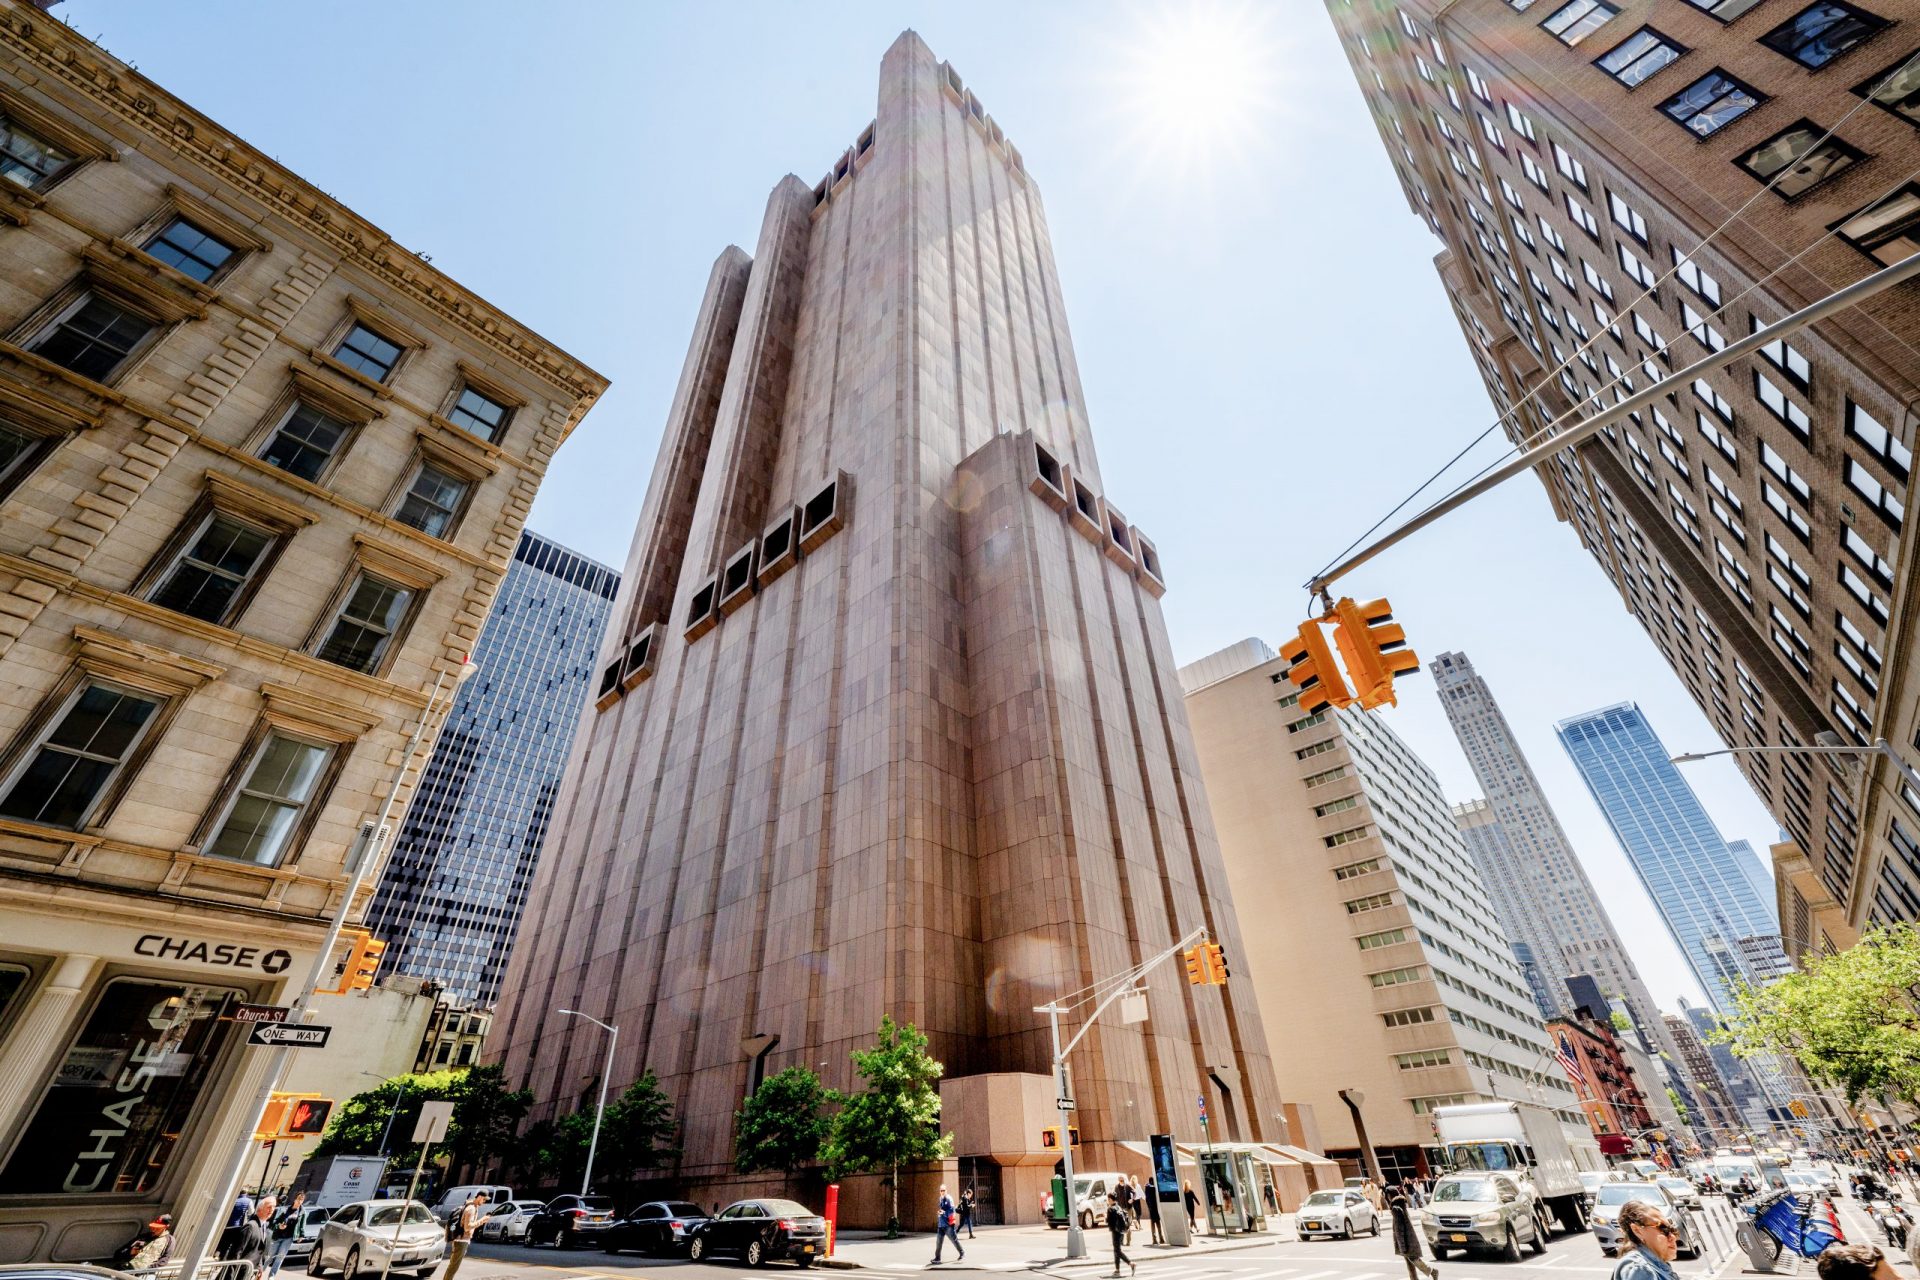 Cosa nasconde il misterioso grattacielo senza finestre nel centro di New York